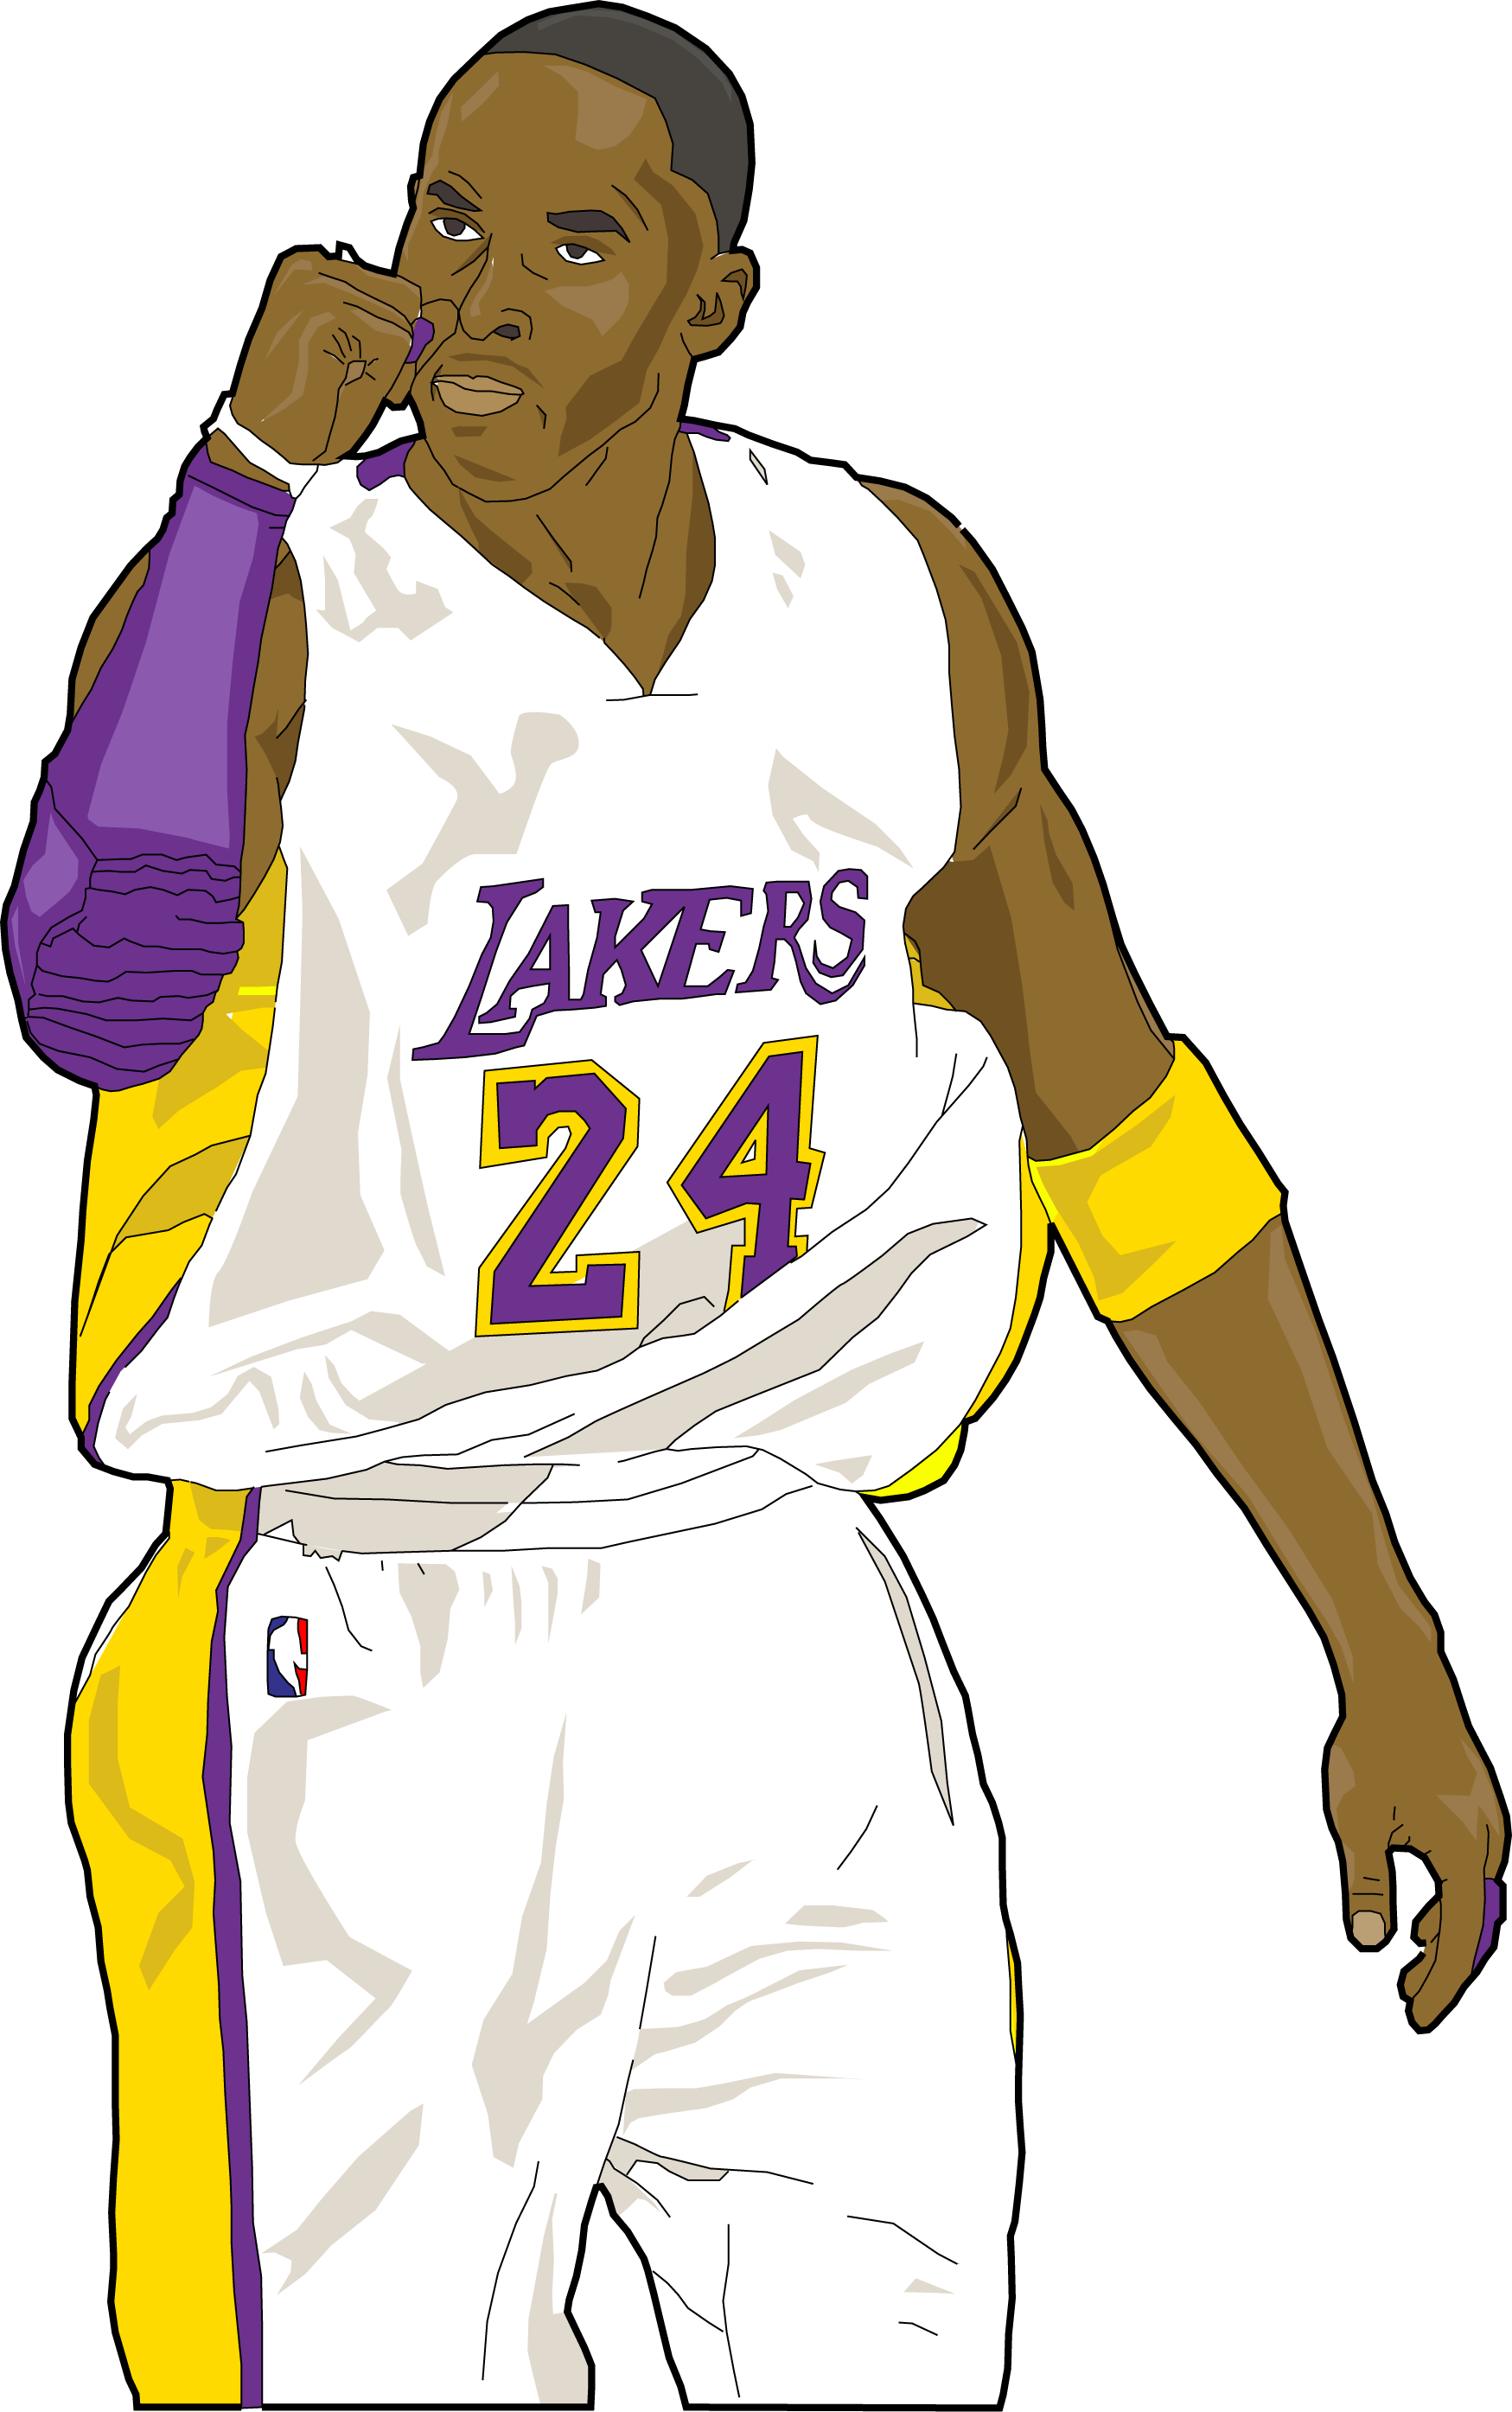 A Cartoon Of A Basketball Player